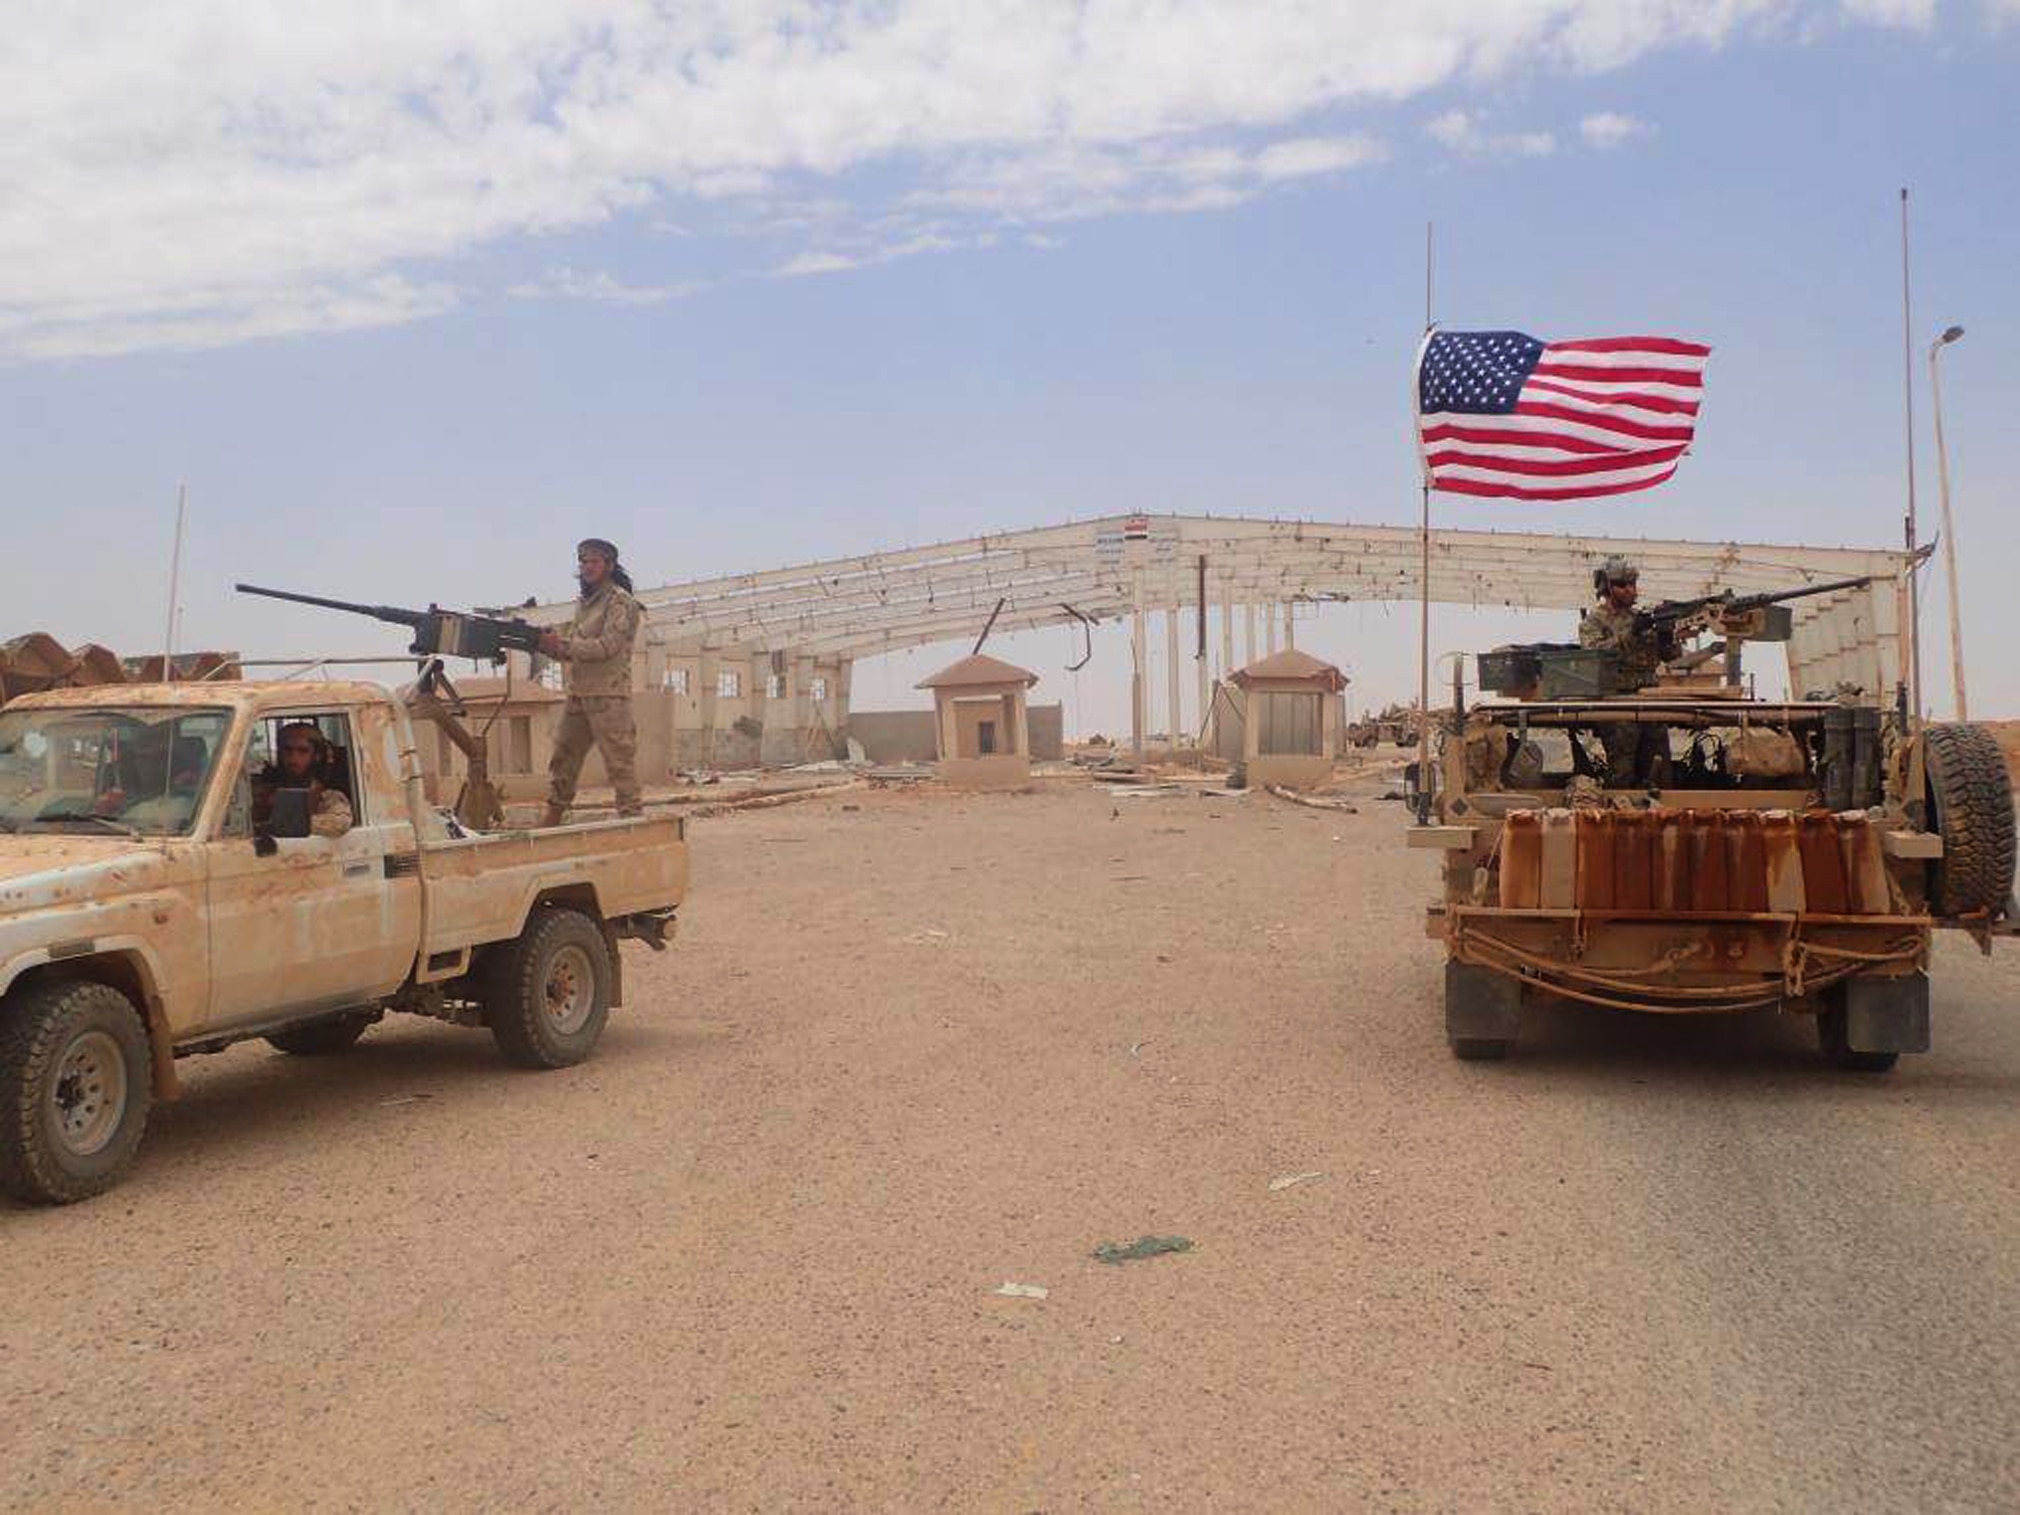 L'atac de drons de la base nord-americana a Síria intensifica els disturbis regionals